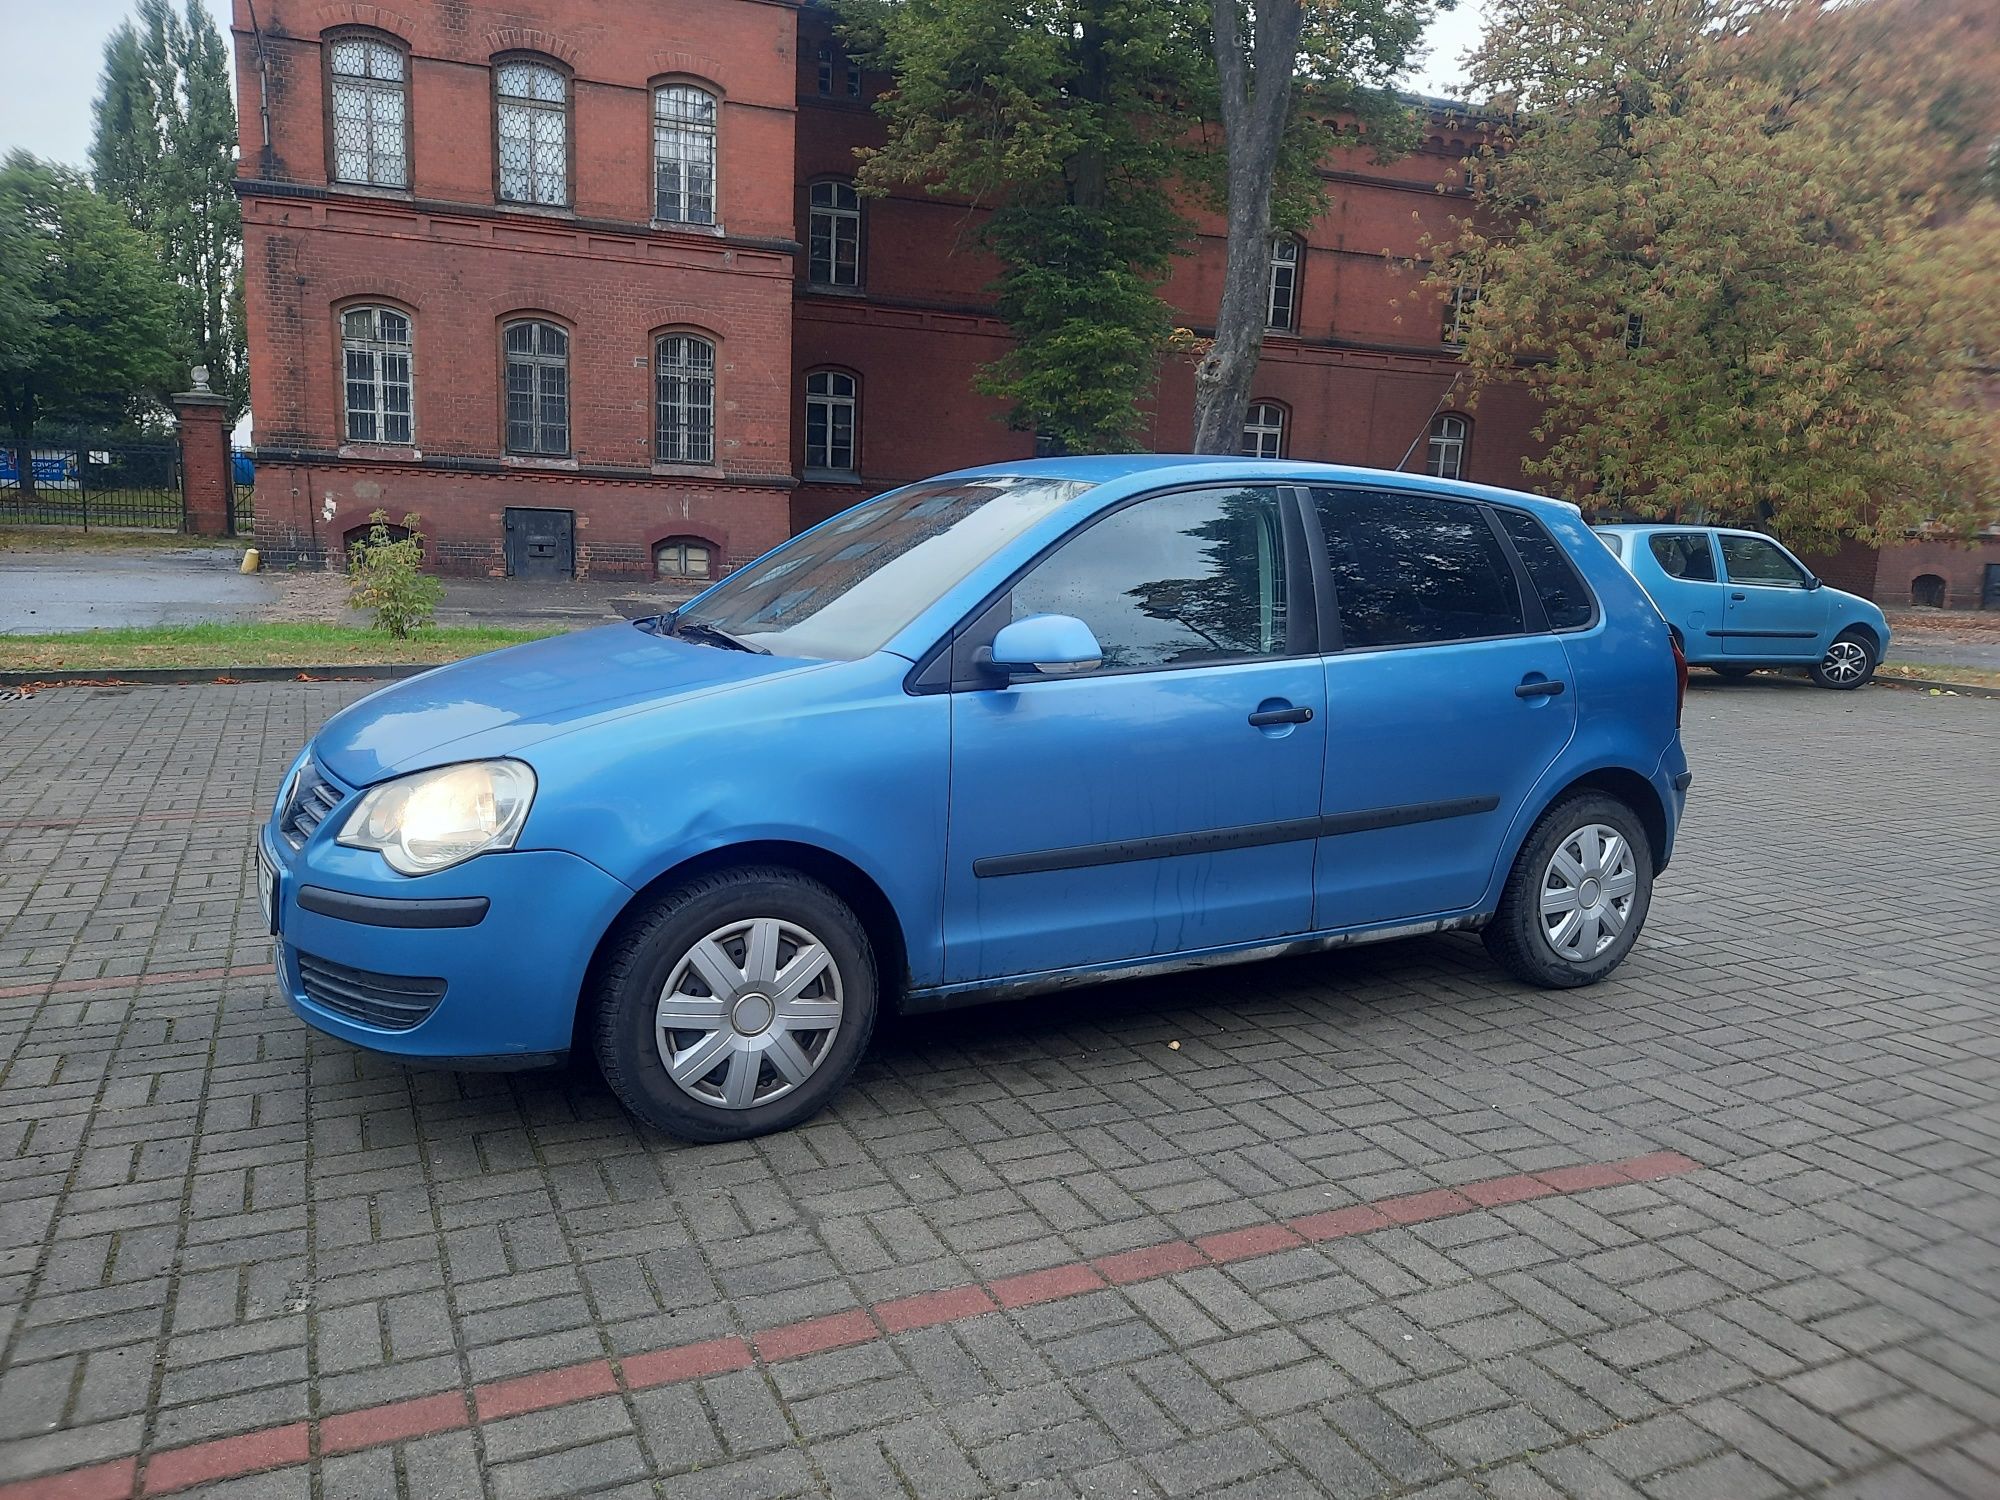 Volkswagen Polo 1,2 benzyna. 112 tys km, klima, 5 drzwi